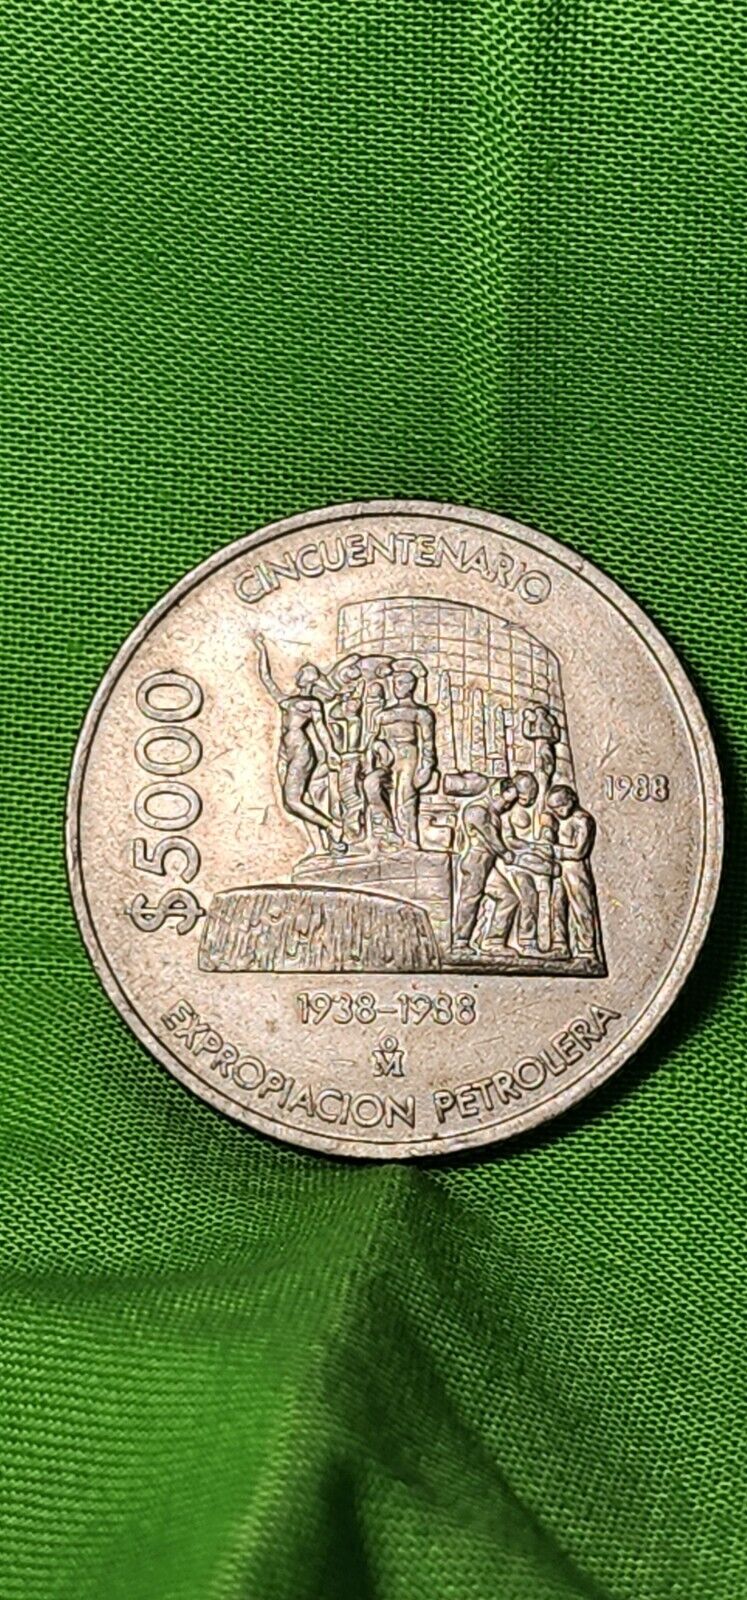 Read more about the article RARE Mexico 1938-1988 Cincuentenario Expropiacion Petrolera Circulated Coins